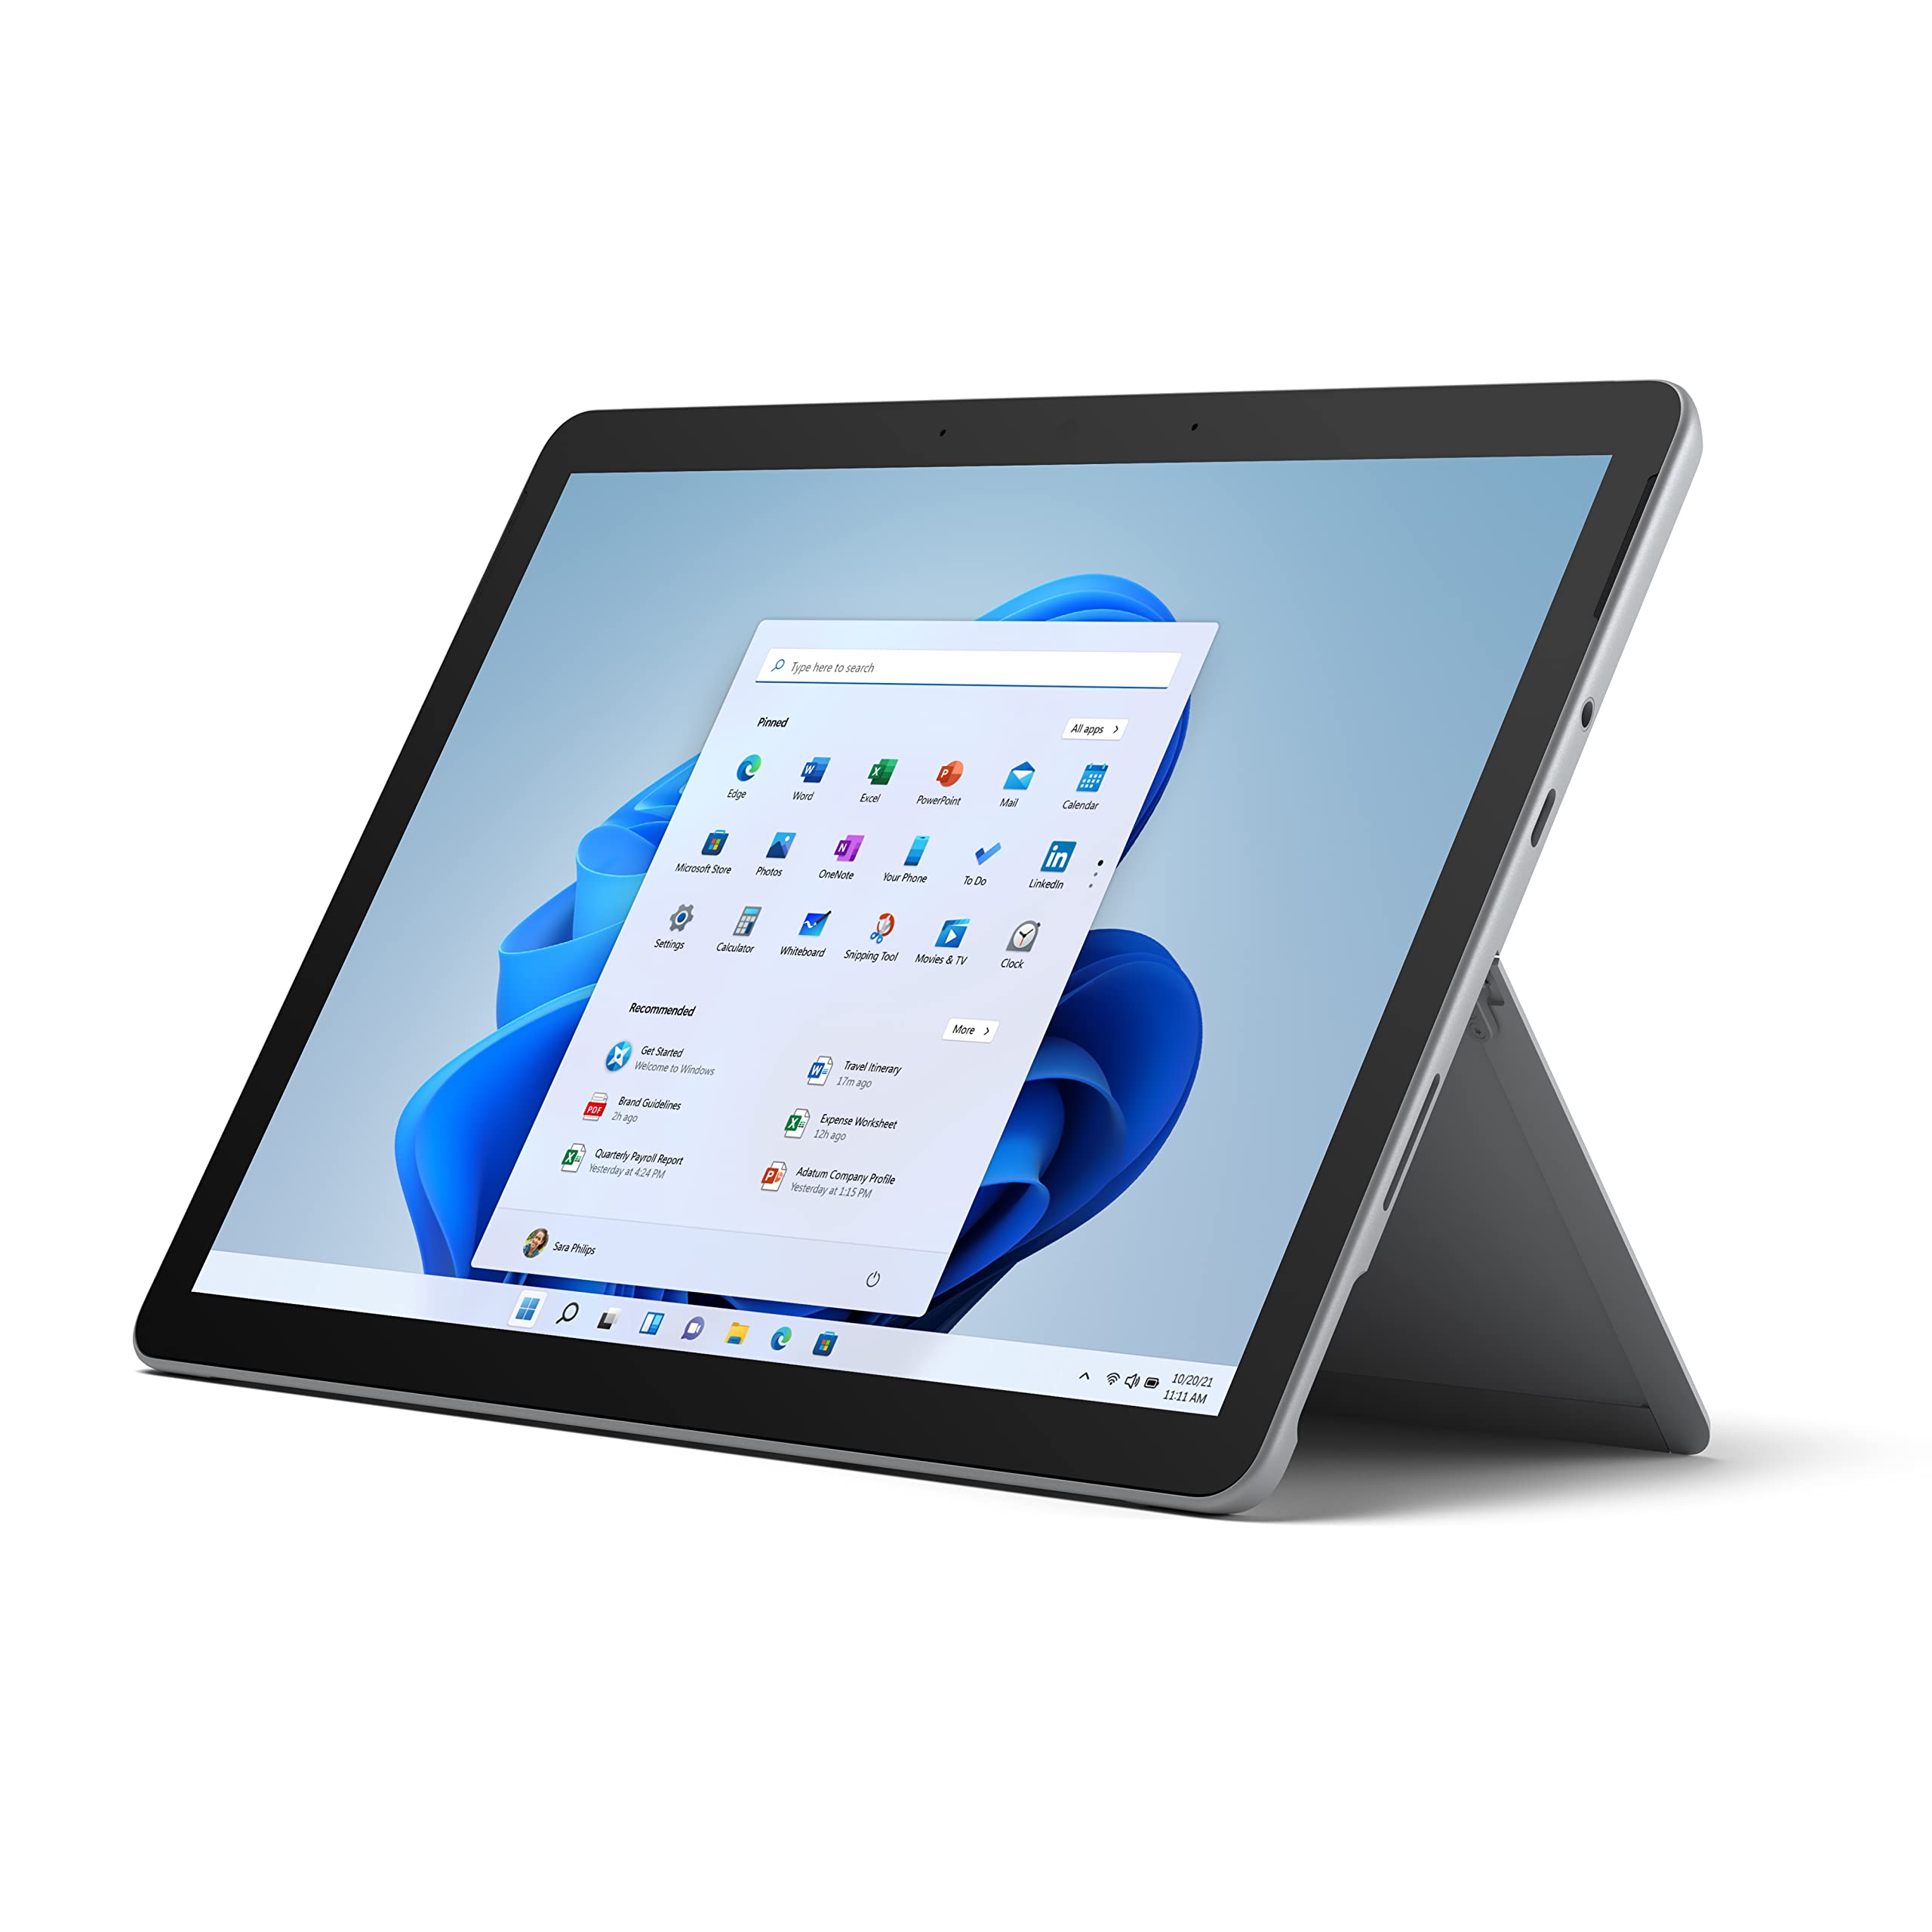 Microsoft 新しい Surface Go 2 - 10.5 インチ タッチ スクリーン - Intel Core m3 - 8GB メモリ - 128GB SSD - Wifi + LTE - プラチナ (最新モデル)